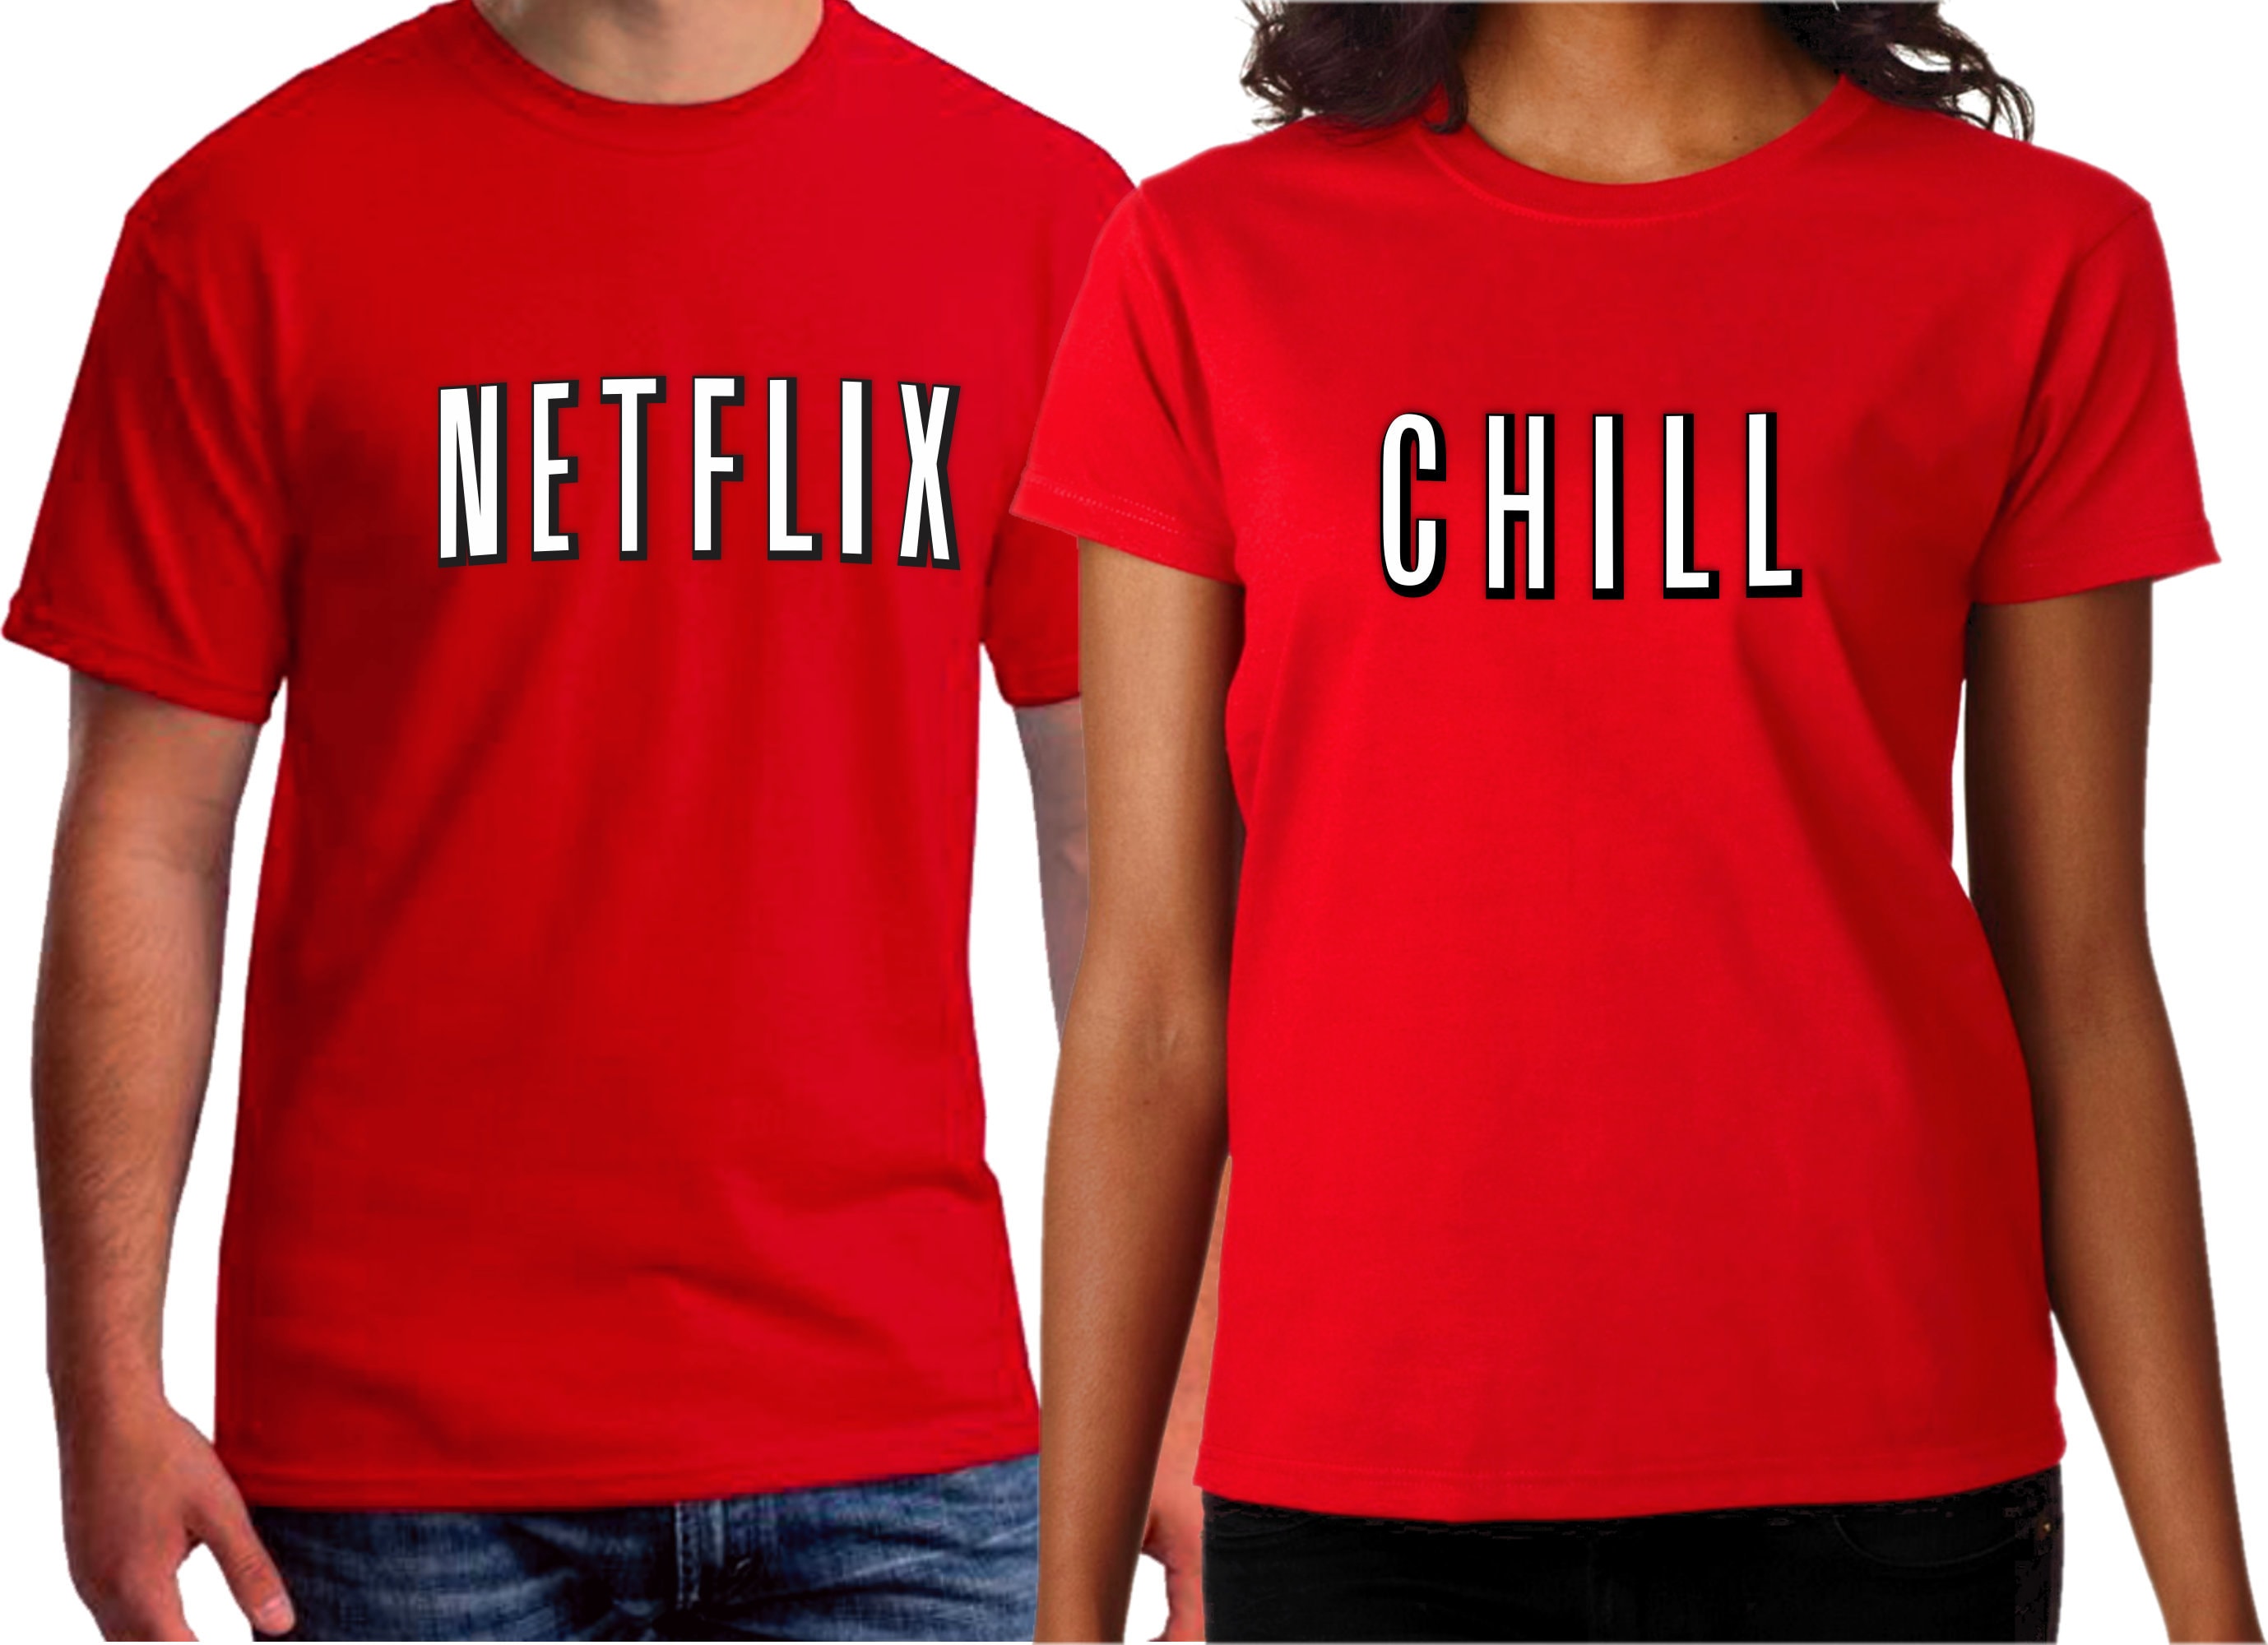 Netflix and Chill Shirt 